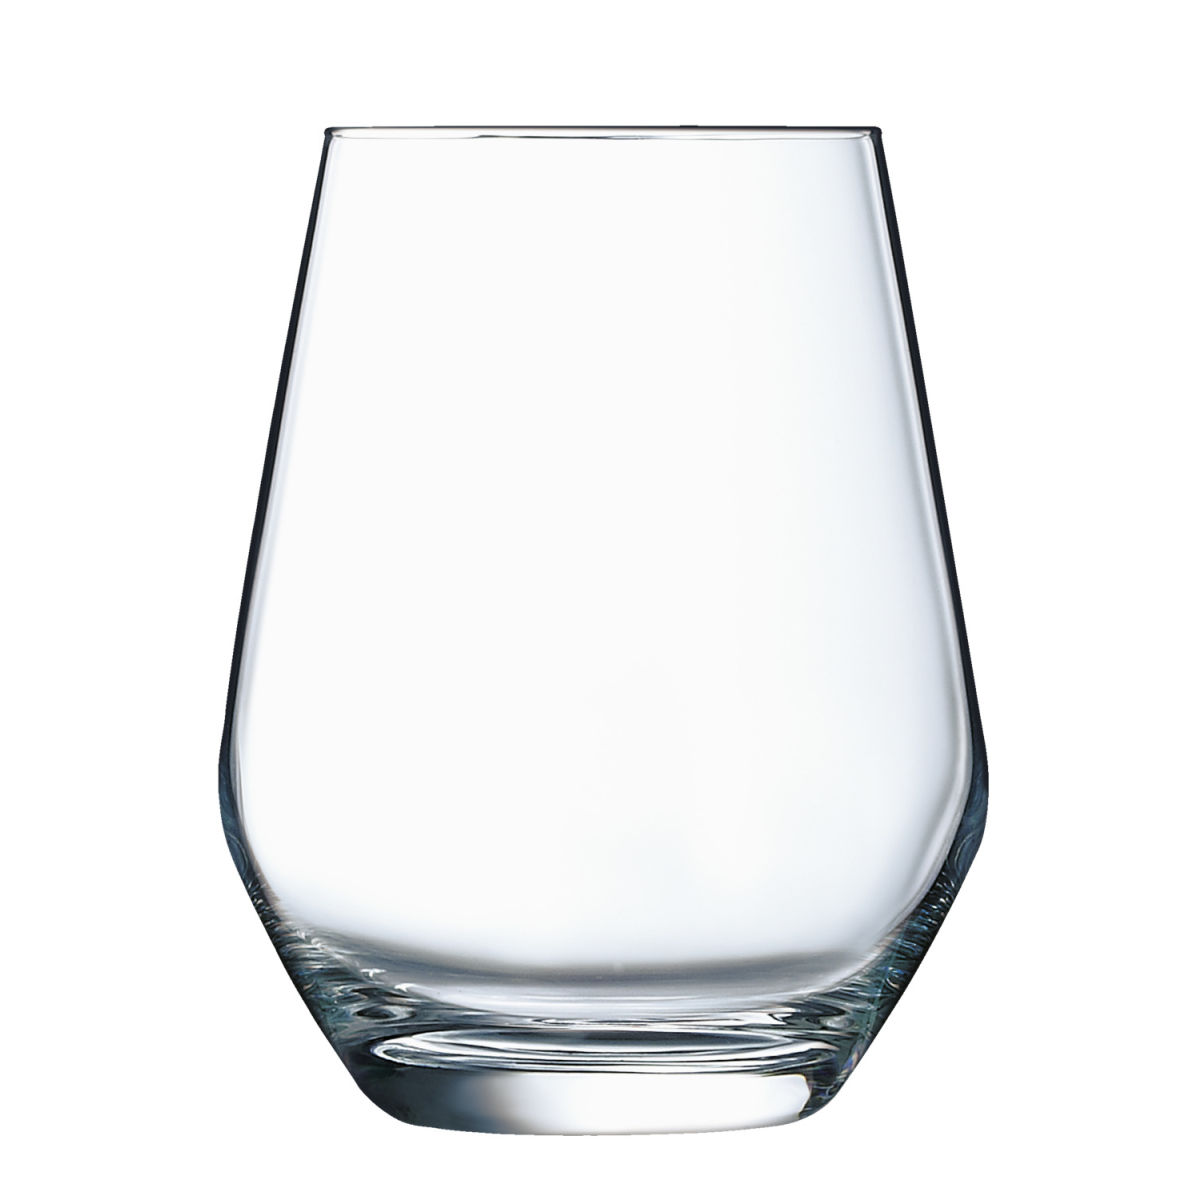 ARC Universeel glas Vina Juliette; 400ml, 8.8x11 cm (ØxH); transparant; 6 stuk / verpakking